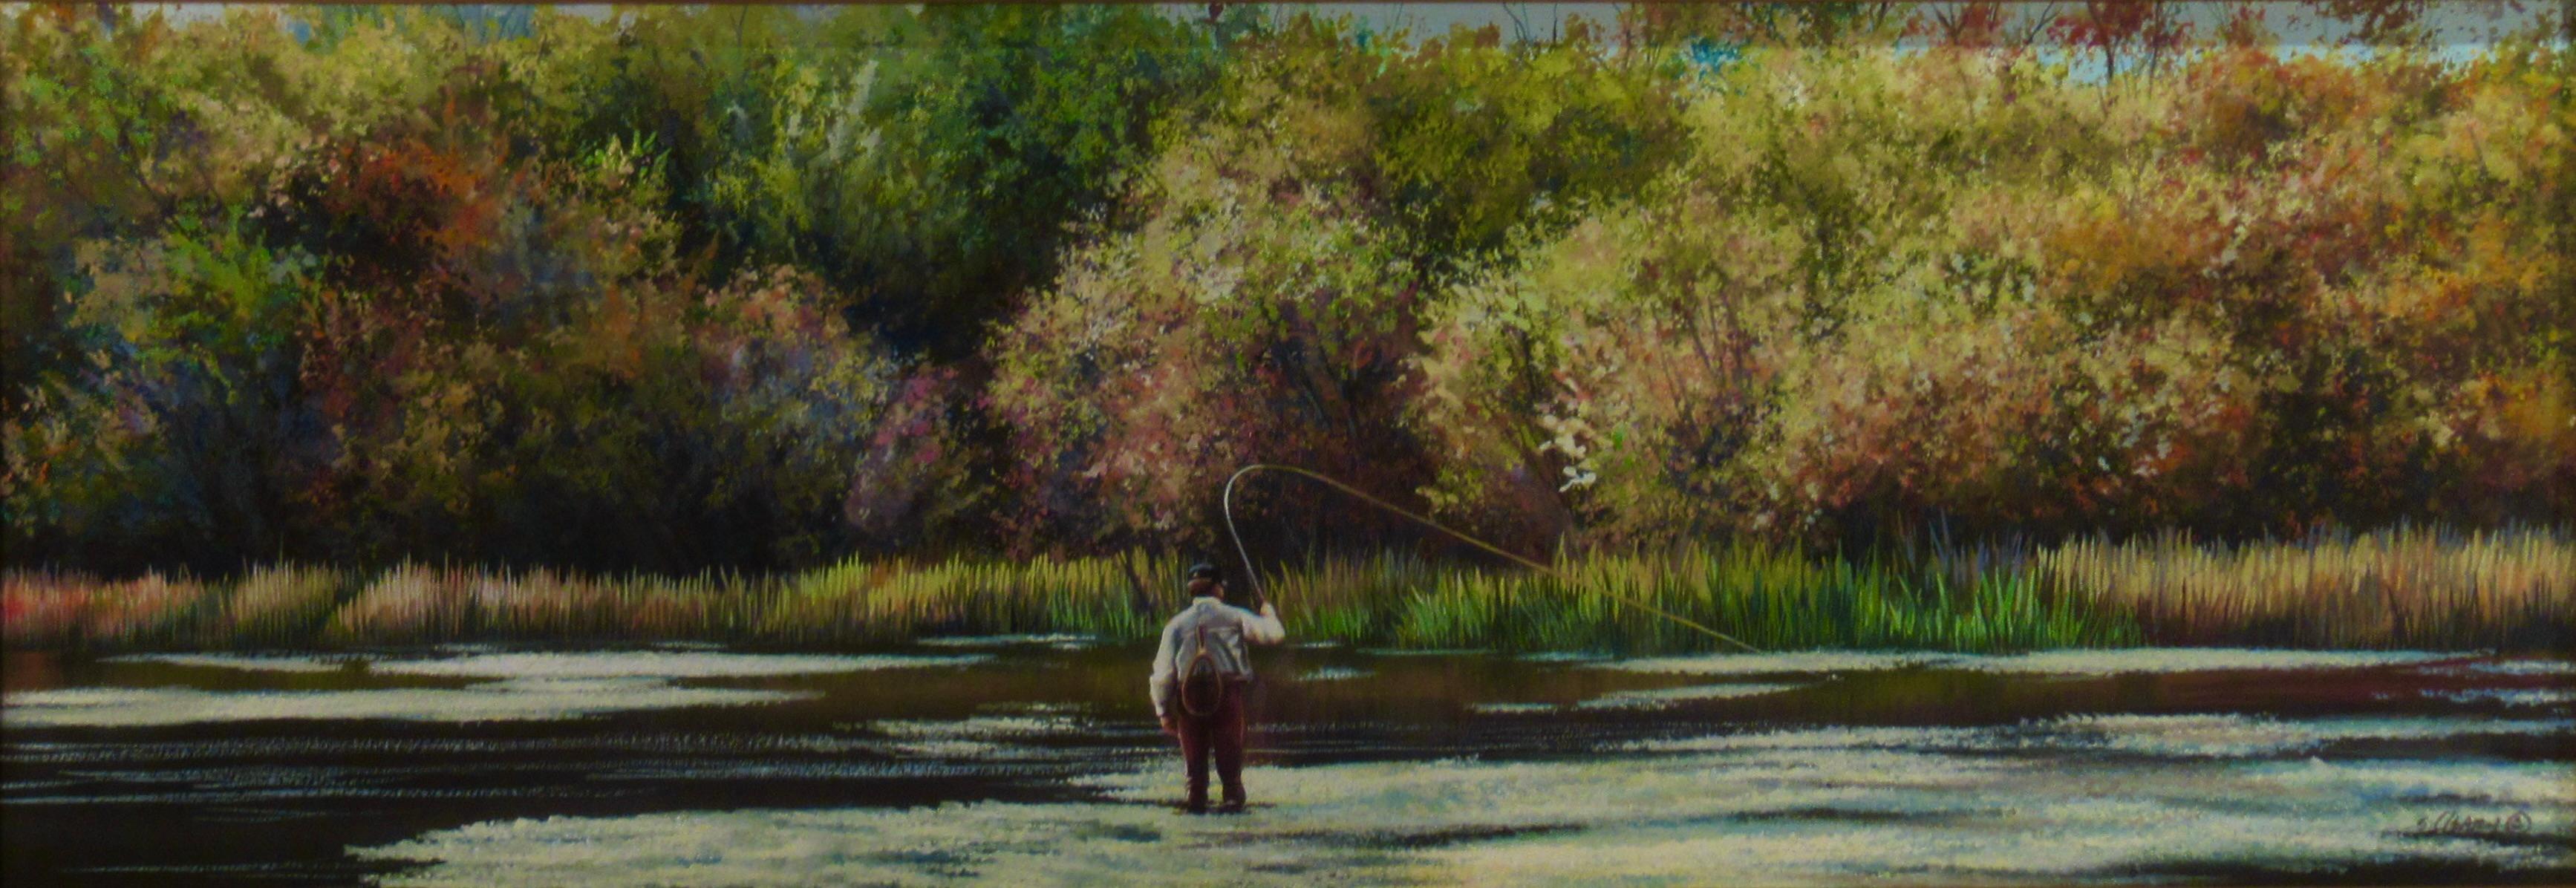 La pêche dans un lac - Art de Shirley Cleary